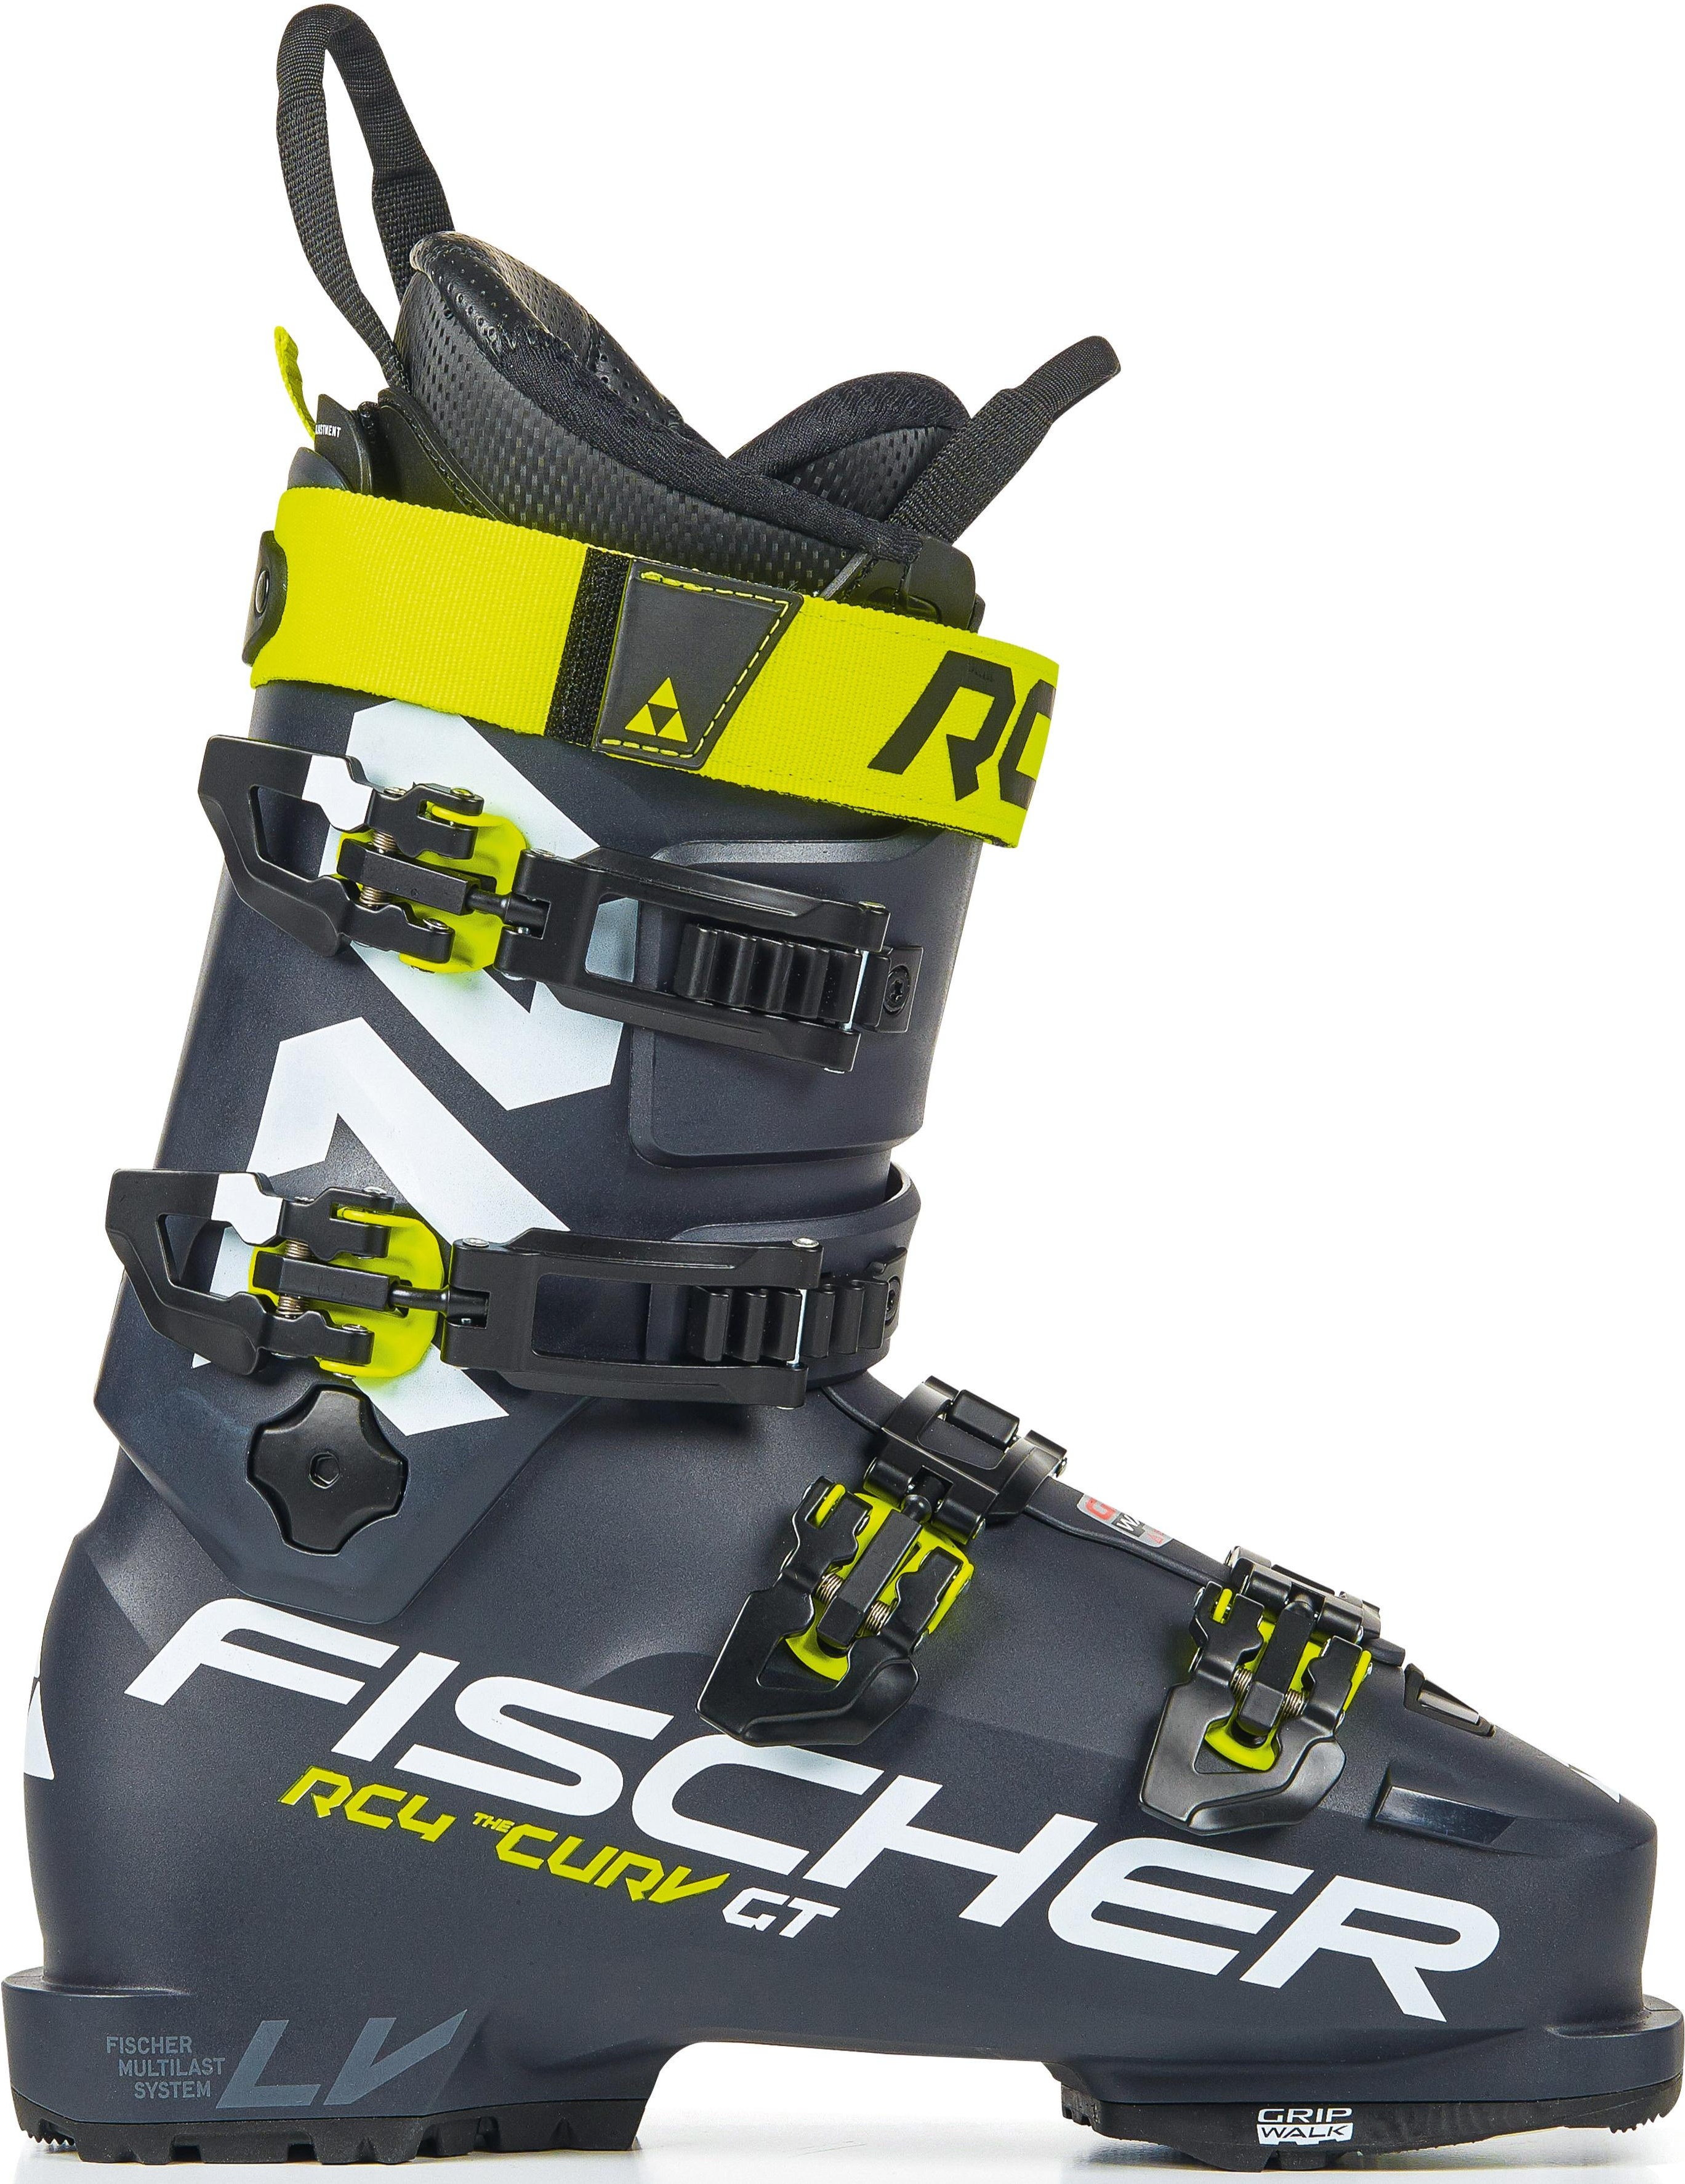 Горнолыжные ботинки Fischer Rc4 The Curv Gt 110 Vacuum Walk 2021, darkgrey/darkgrey, 27.5